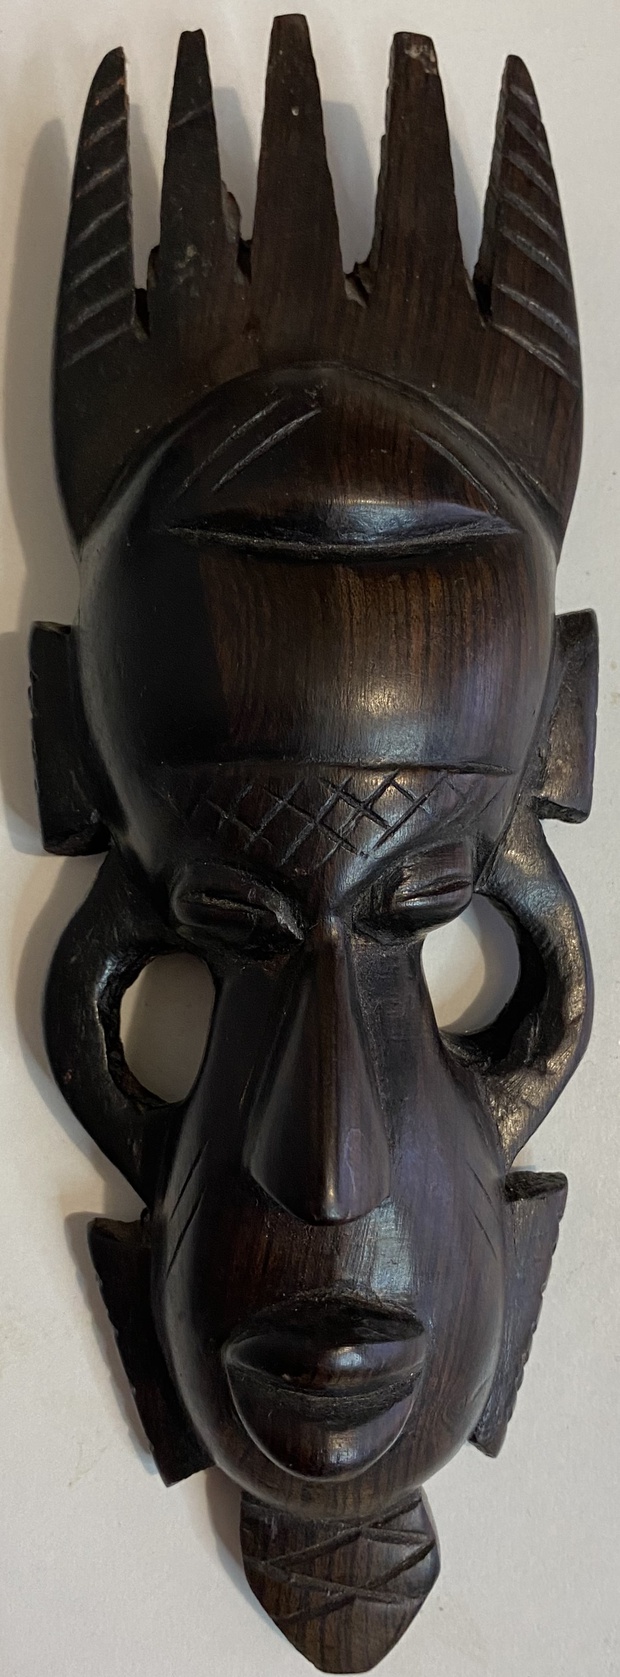 Антикварная резная маска черное дерево Африка - Сомали, 80-е года 20 века